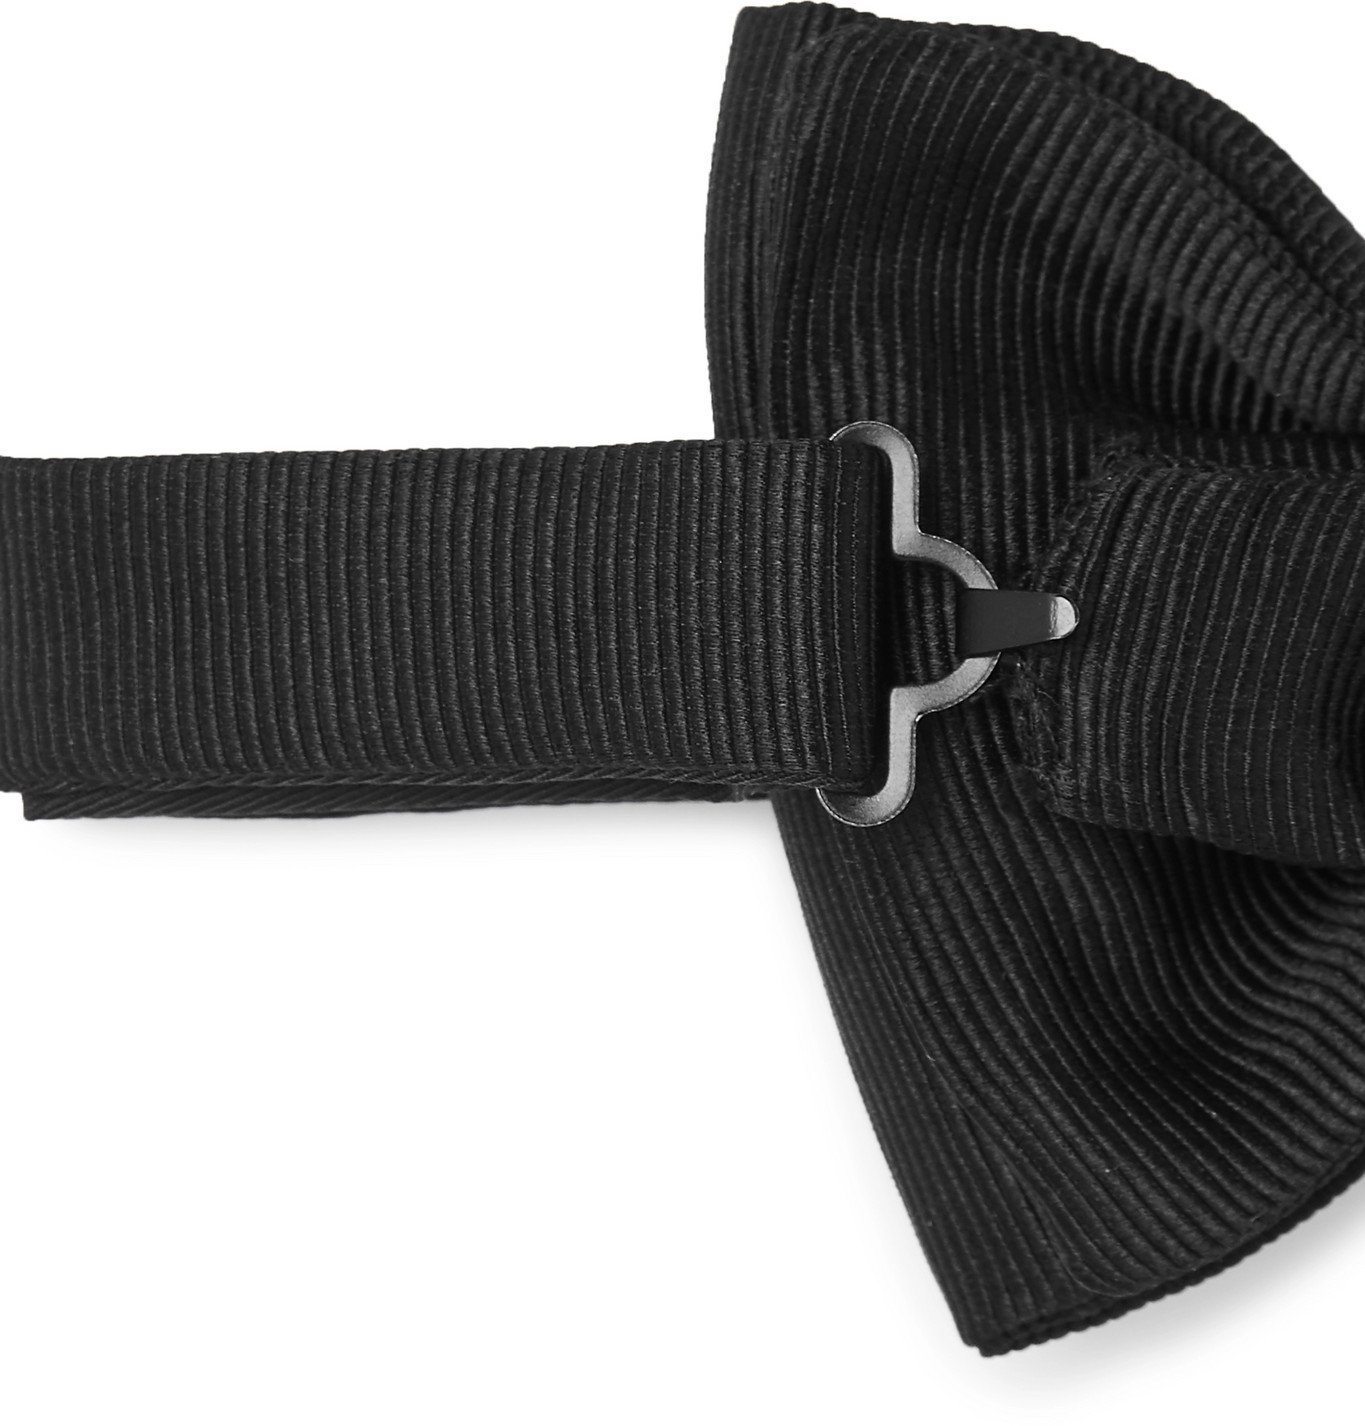 TOM FORD - Pre-Tied Silk-Grosgrain Bow Tie - Black TOM FORD